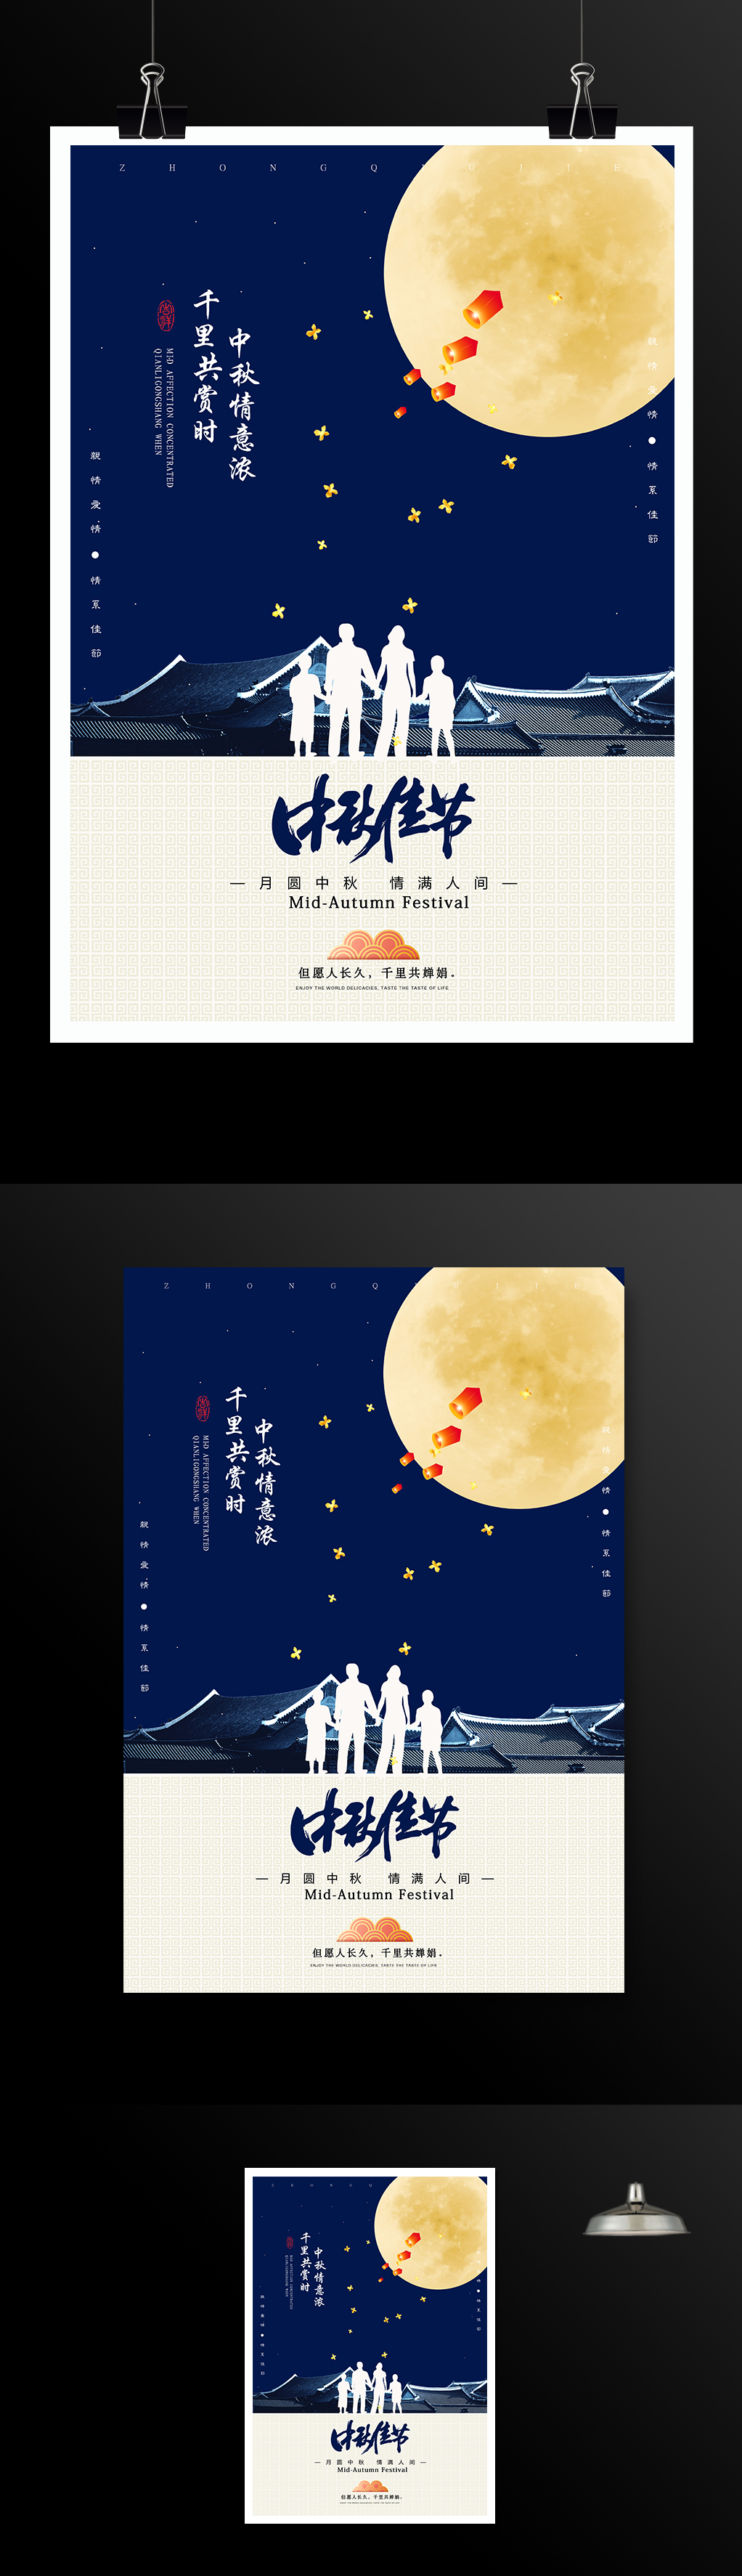 传统佳节中秋节促销海报